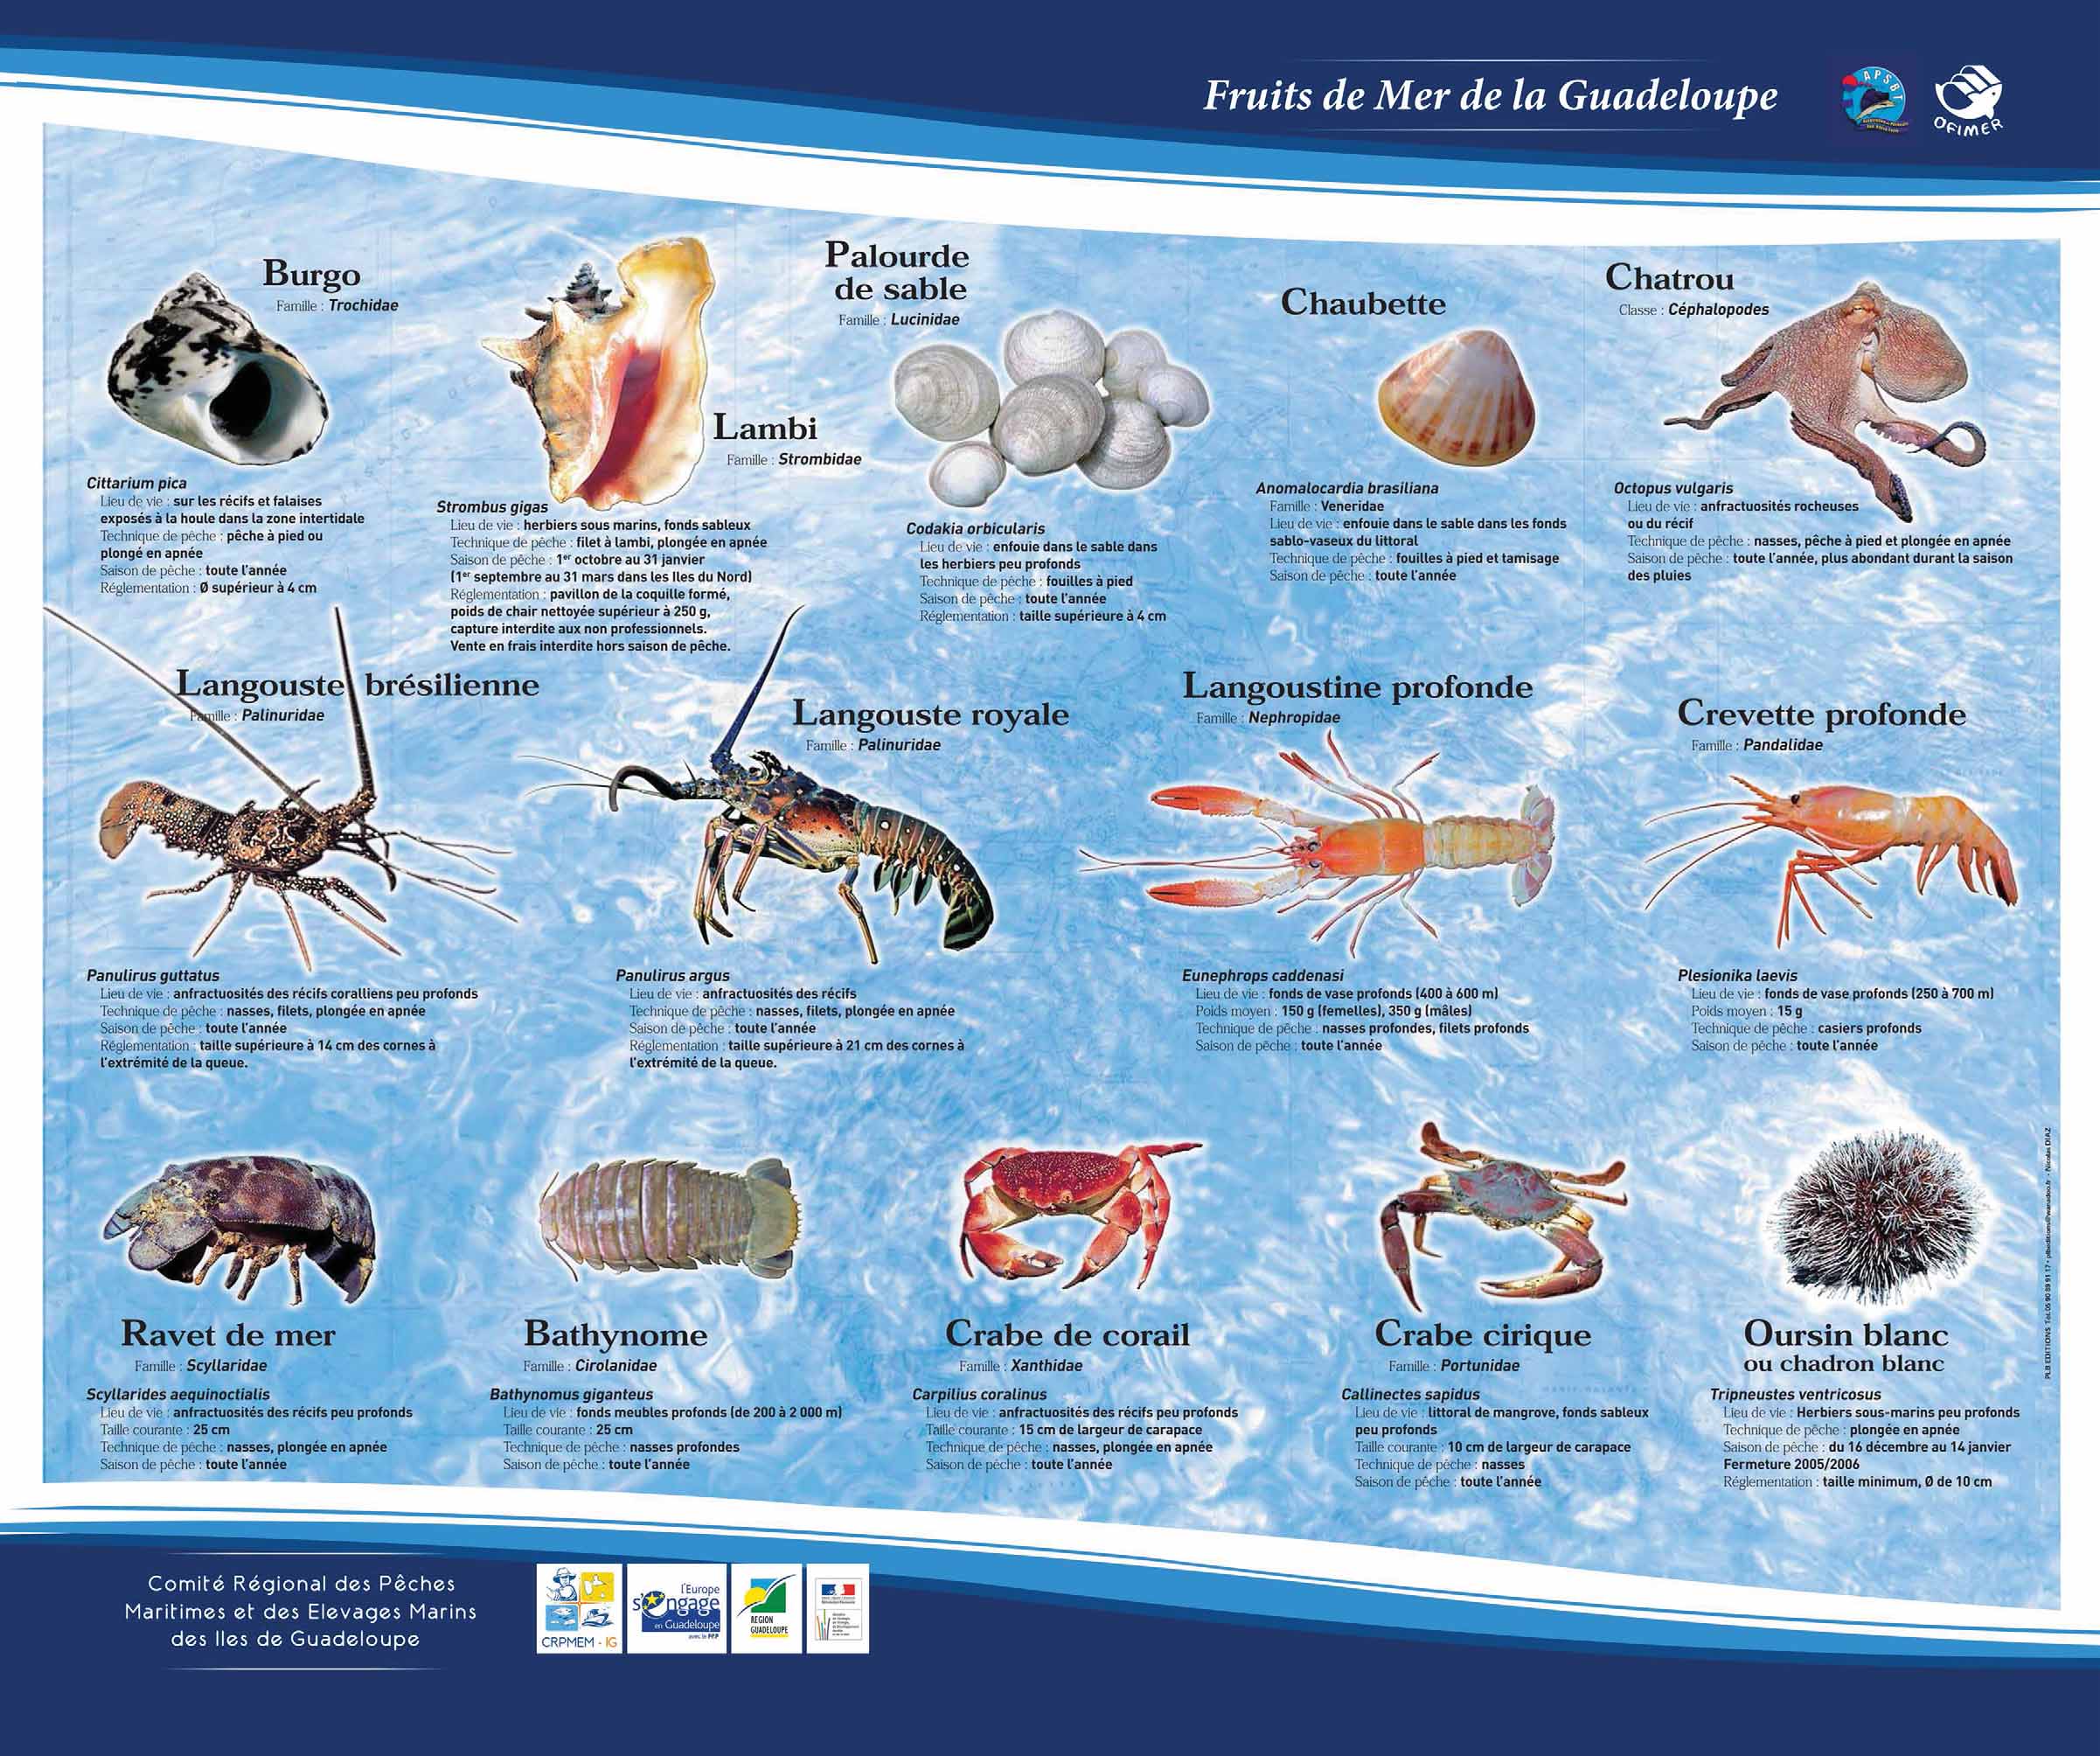 Télécharger le poster des fruits de mer principaux consommés en Guadeloupe